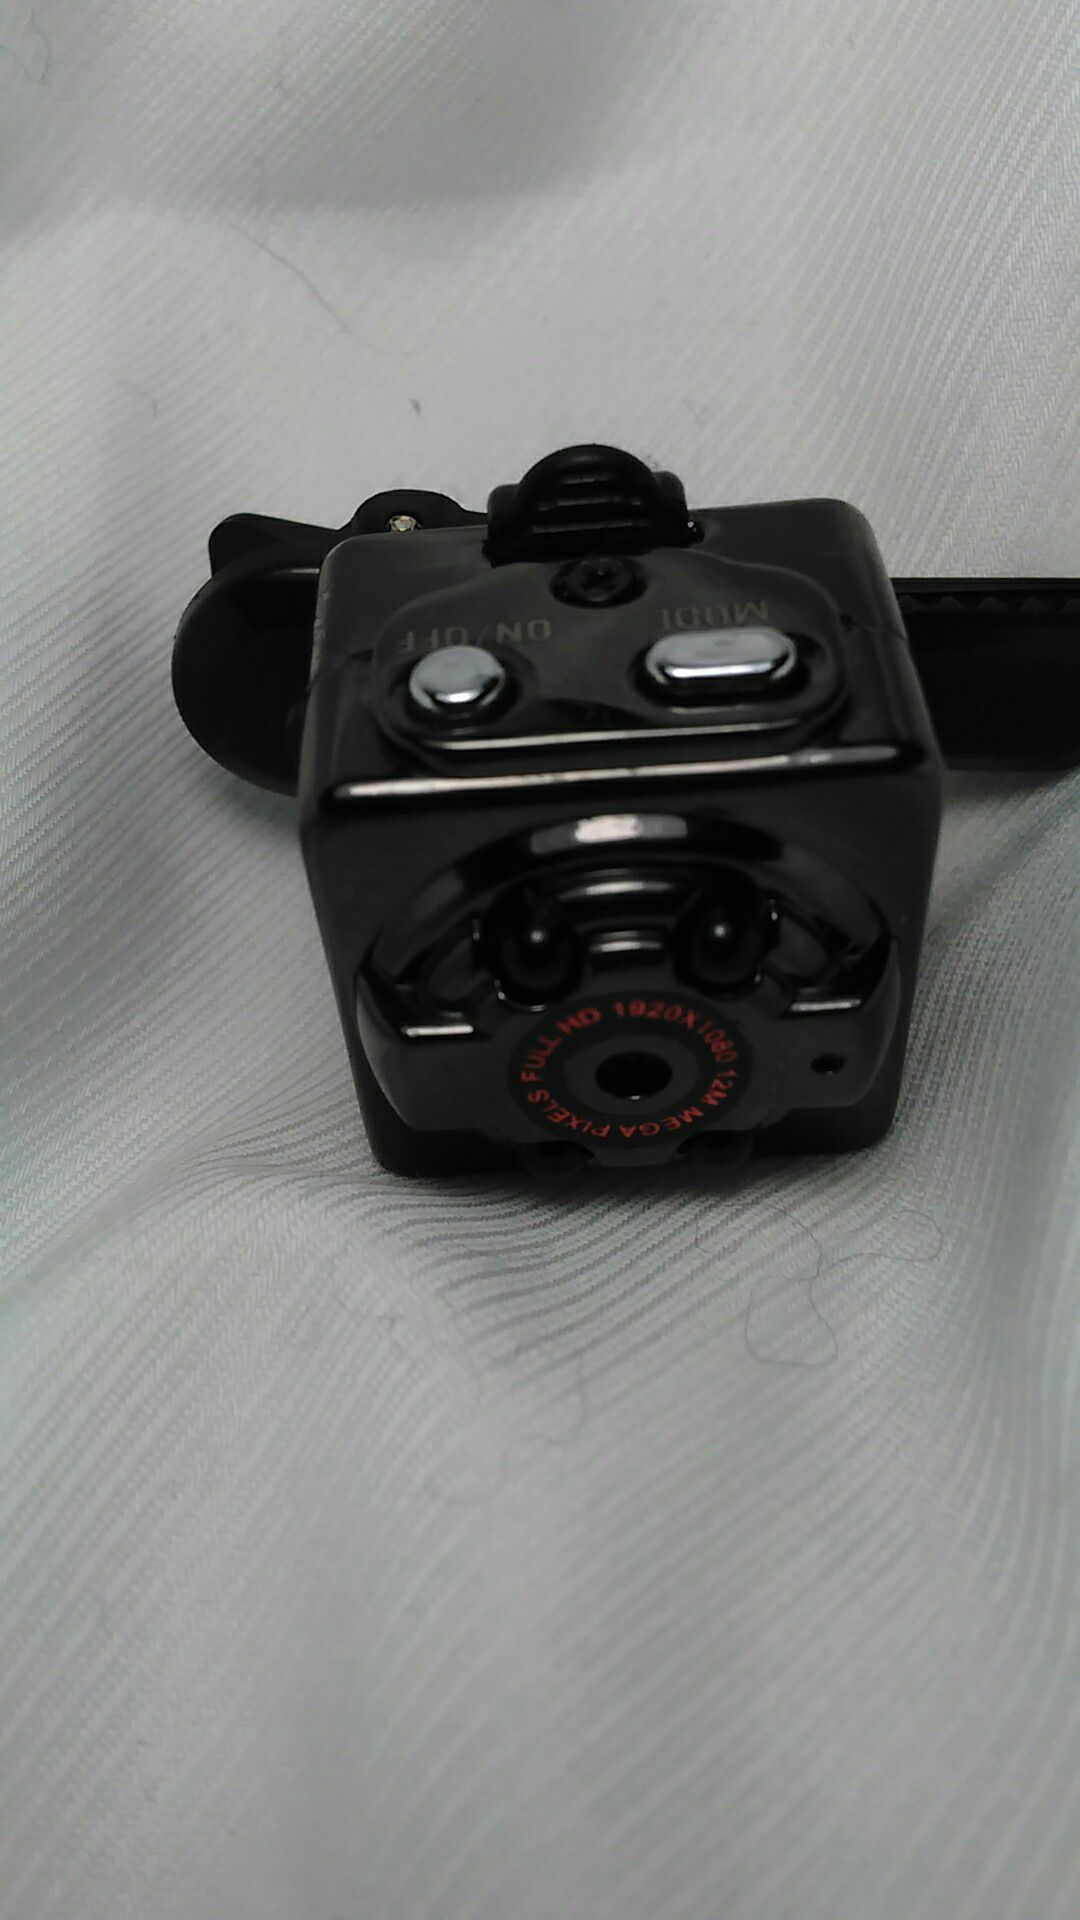 Mini spy camera